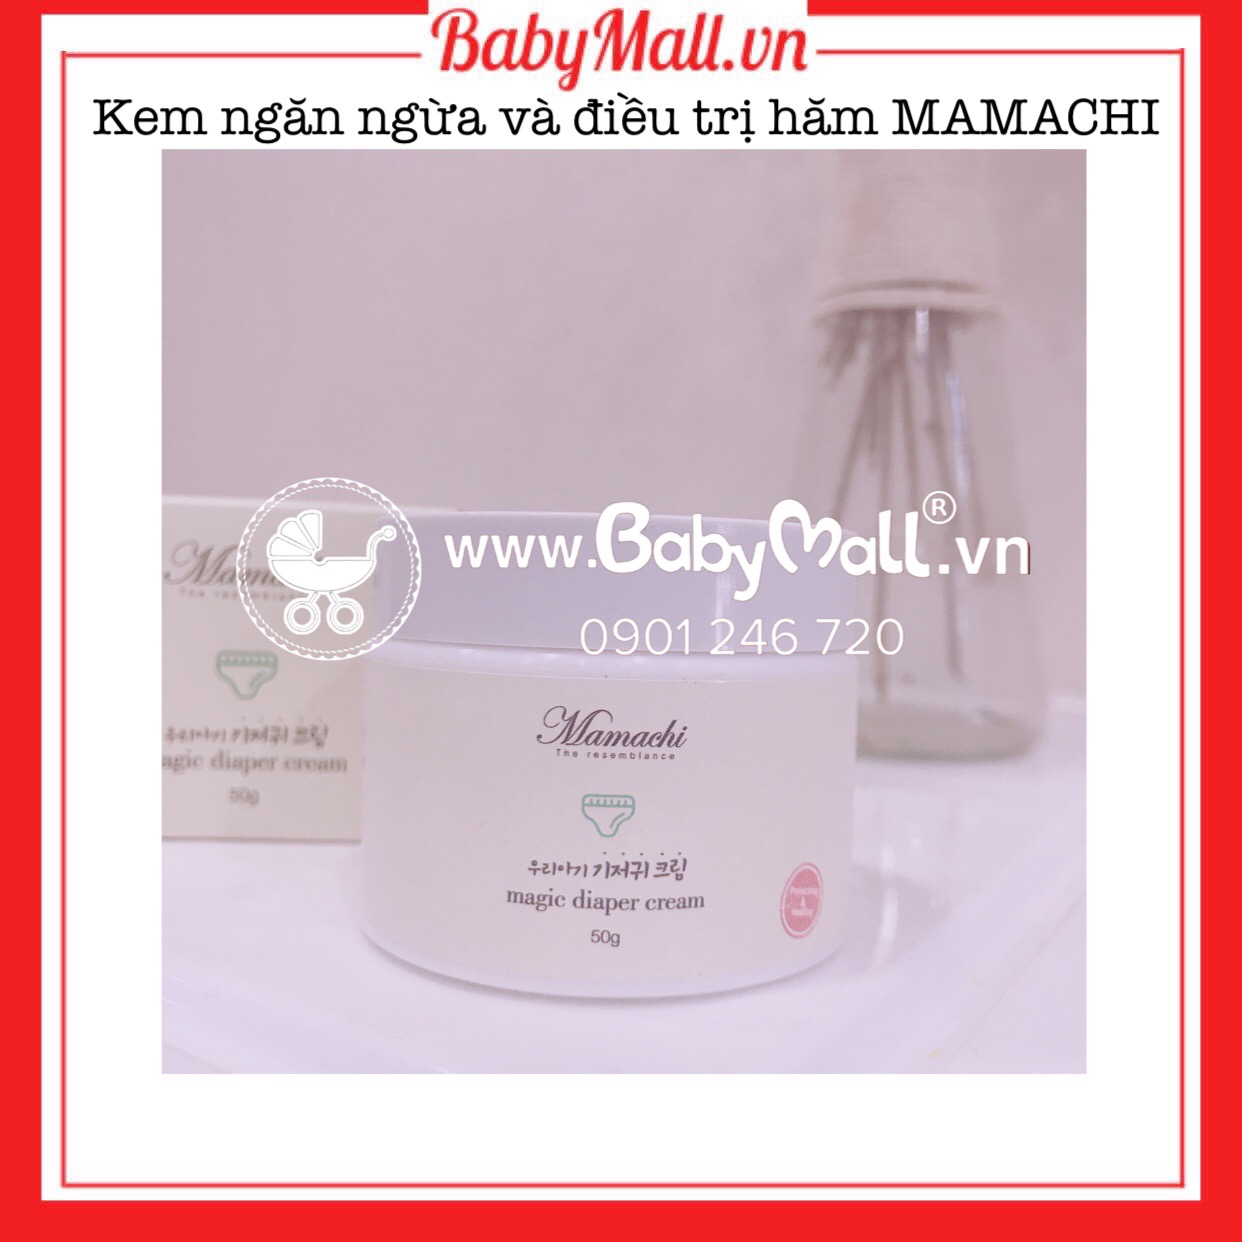 Kem ngăn ngừa và điều trị hăm Mamachi Babymall.vn